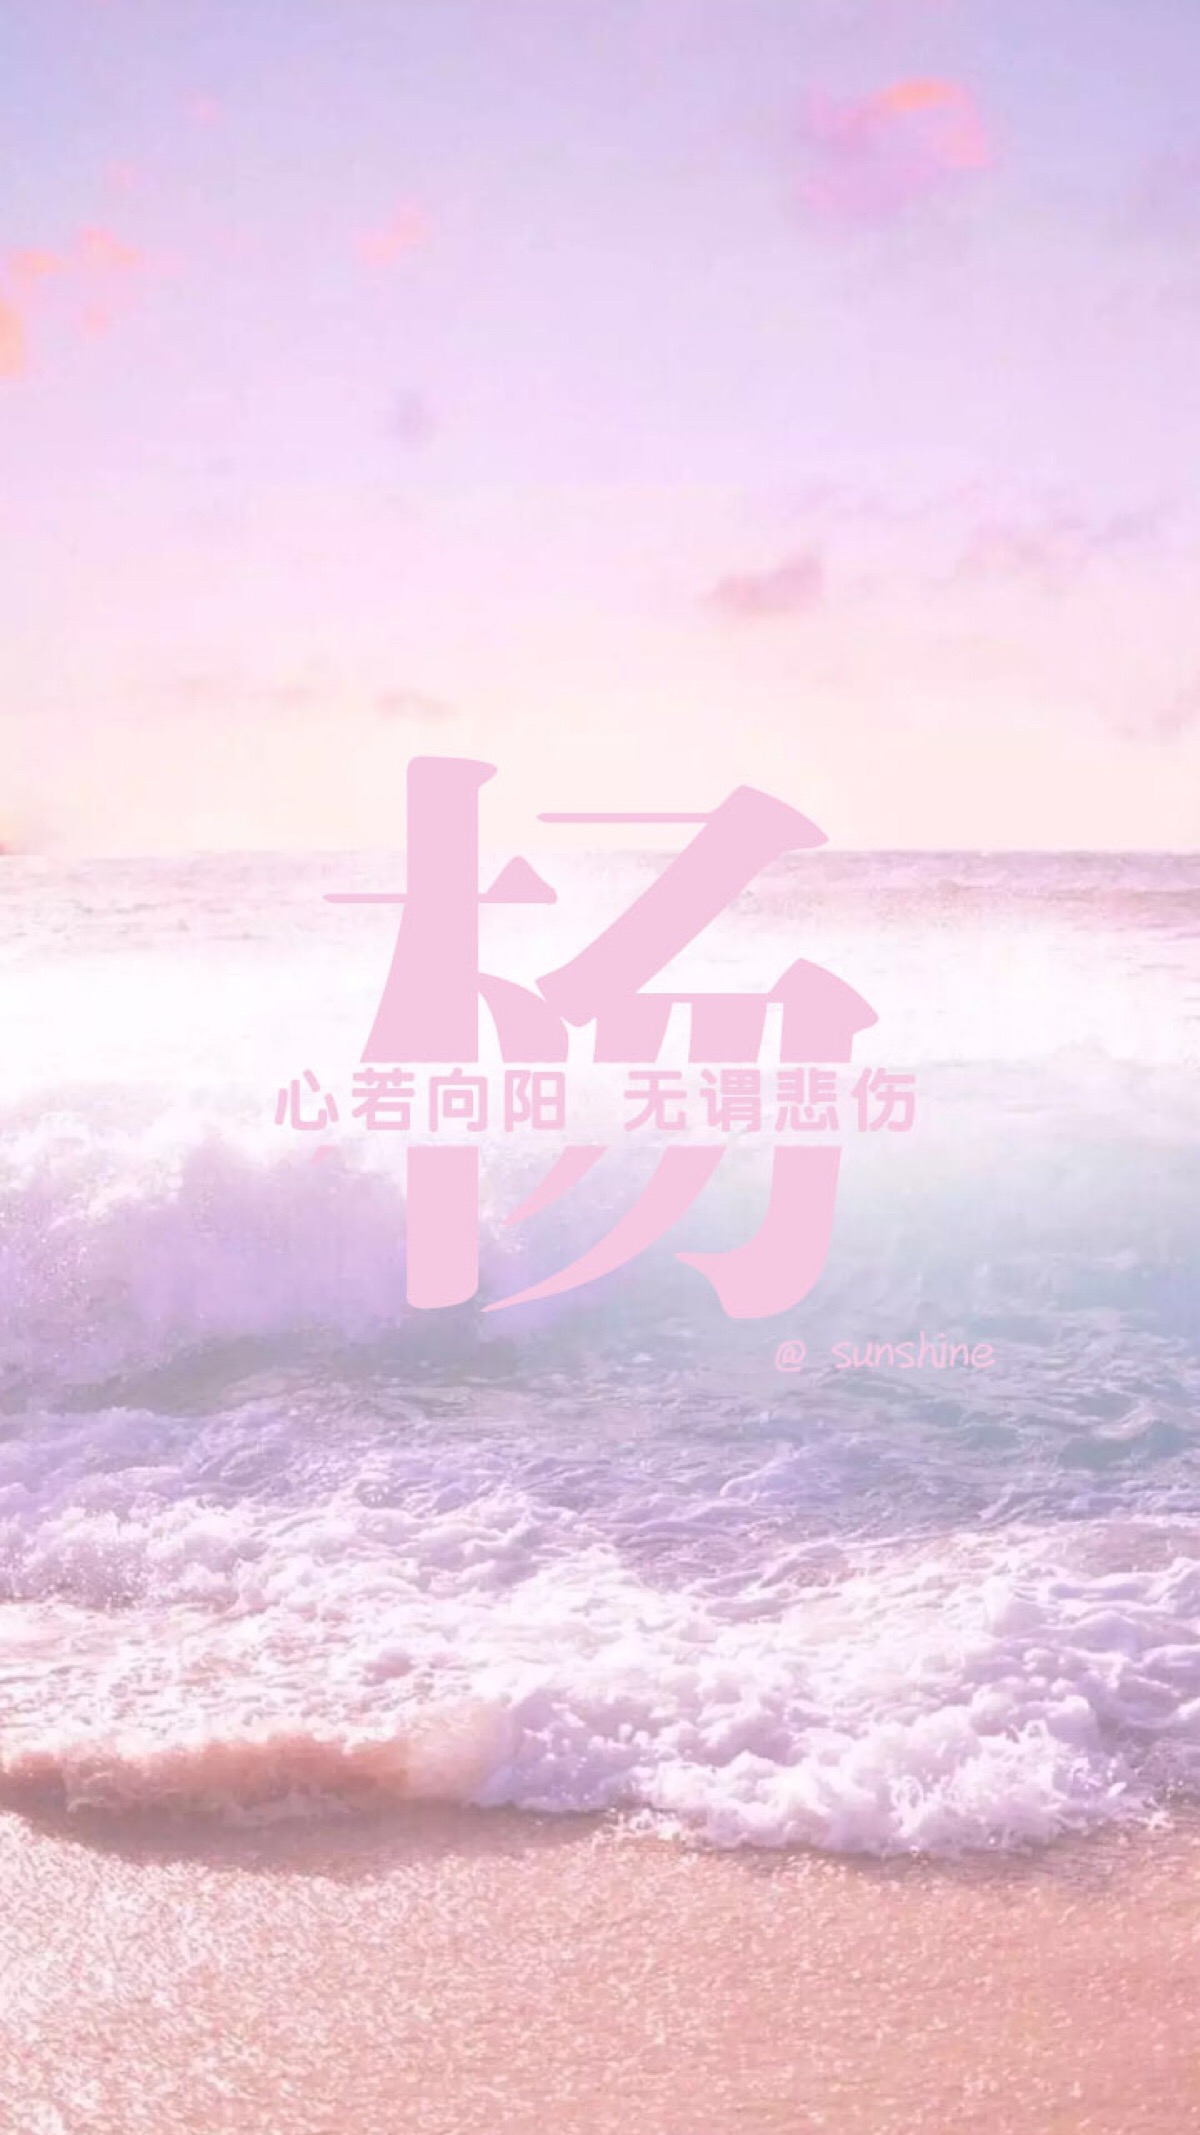 杨氏 壁纸 海洋 紫色